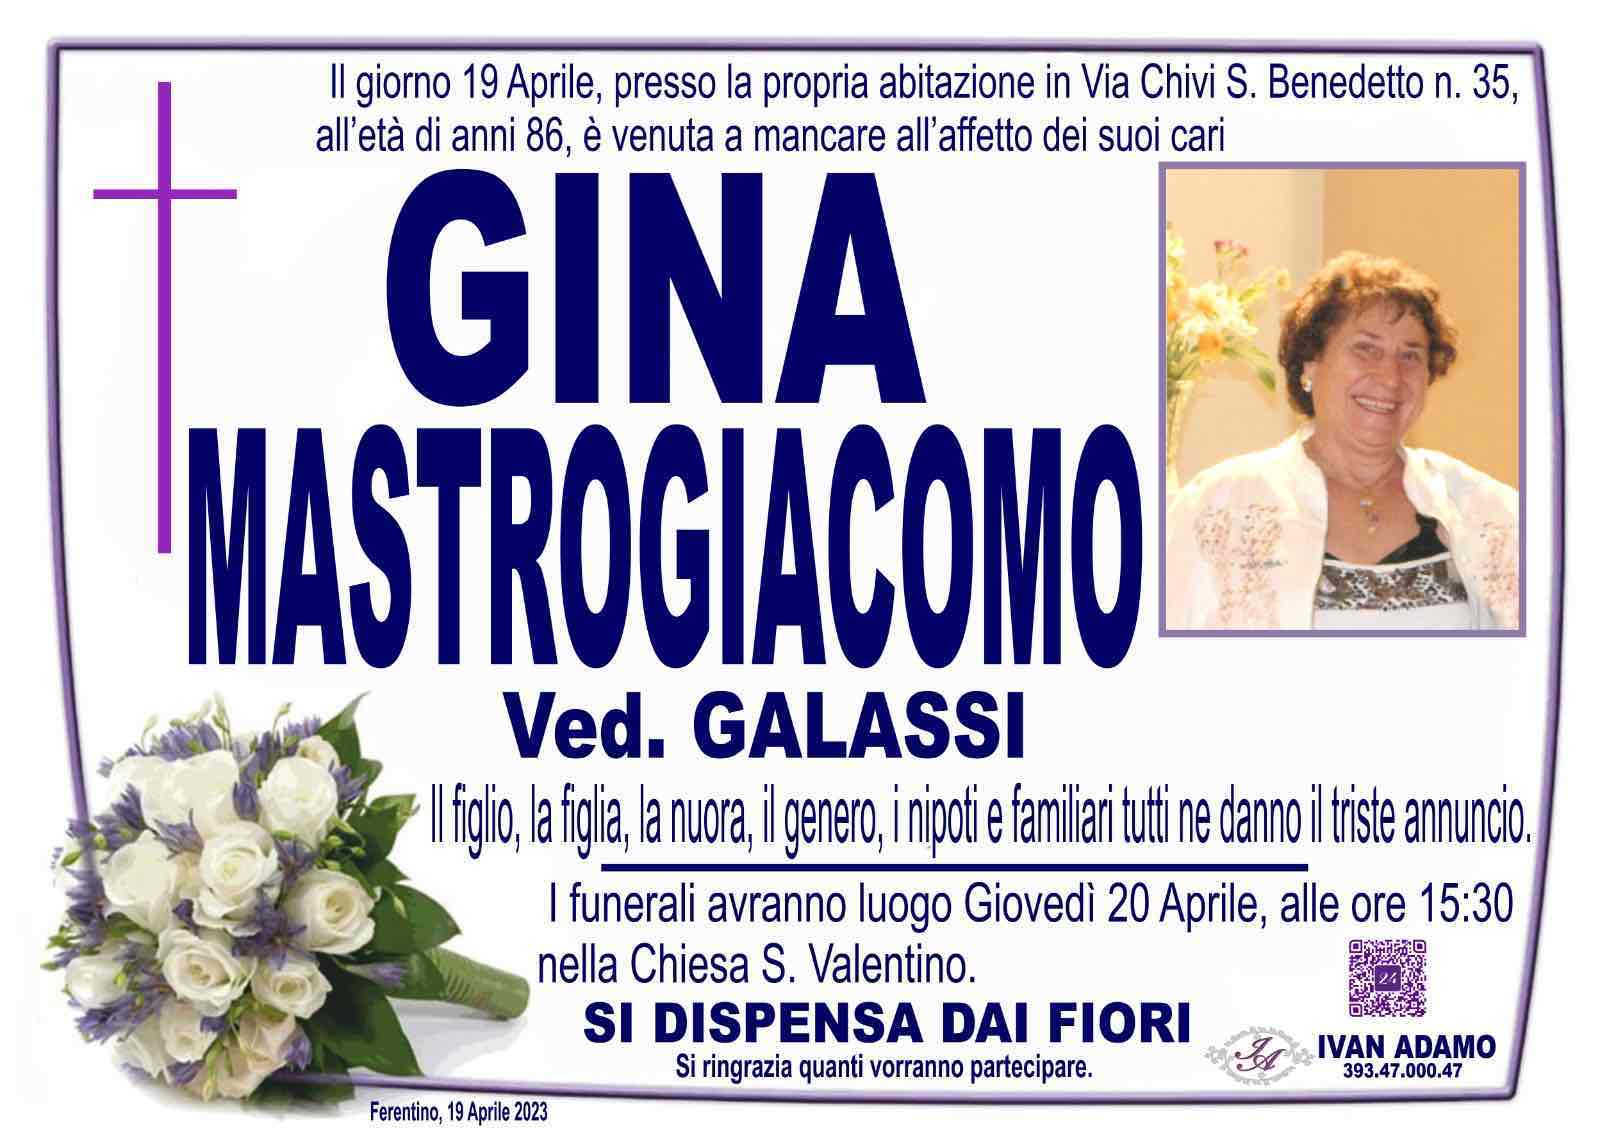 Gina Mastrogiacomo